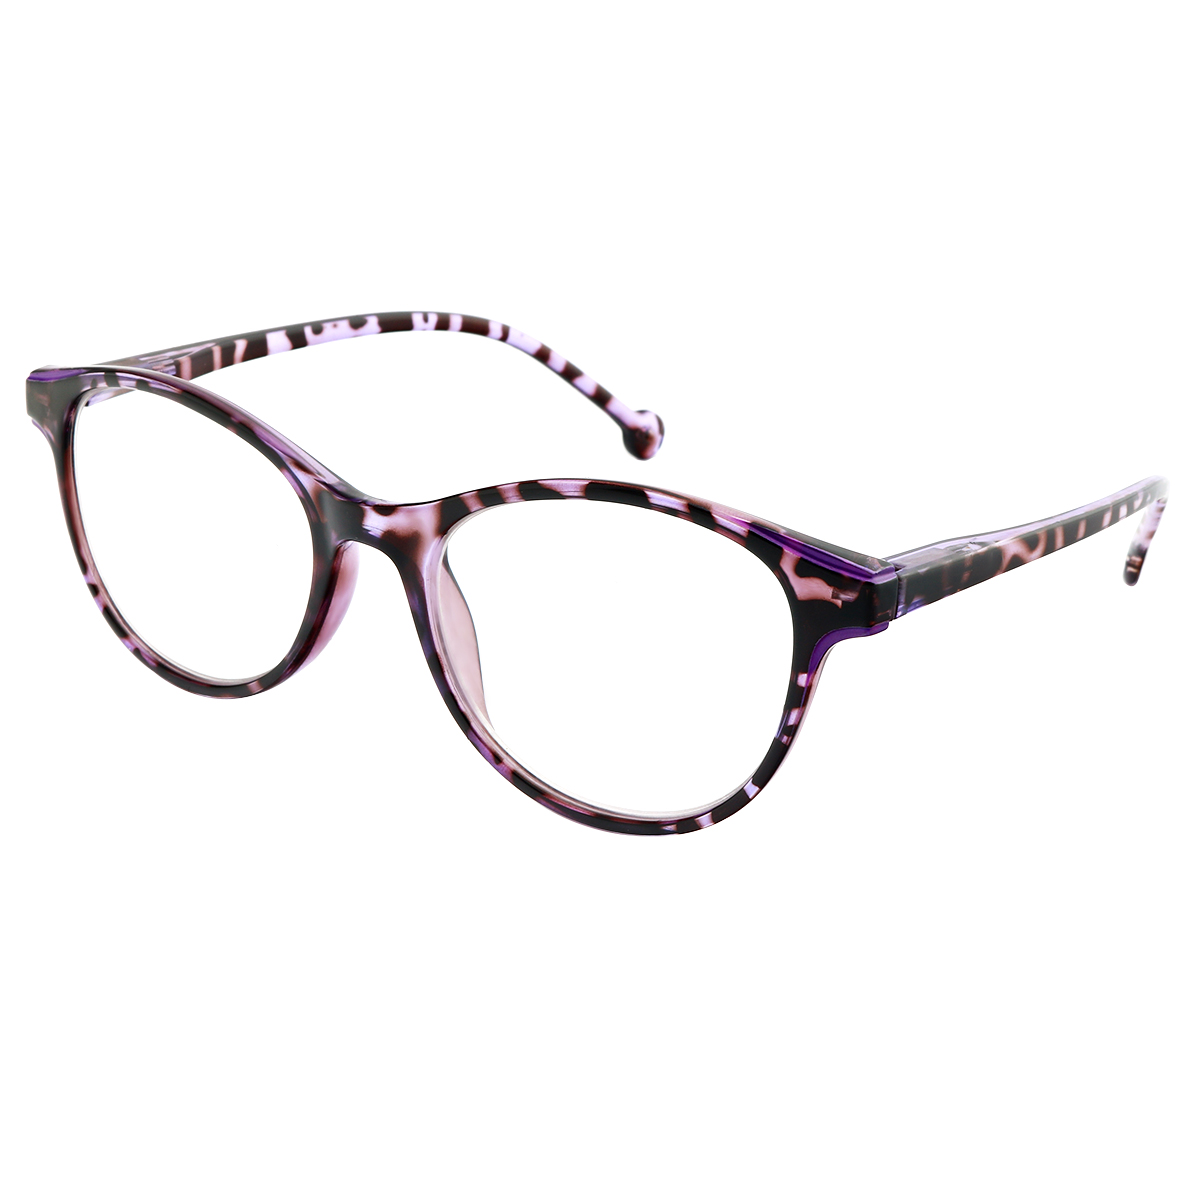 Lesley - Cat-eye Purple Reading Glasses for Women